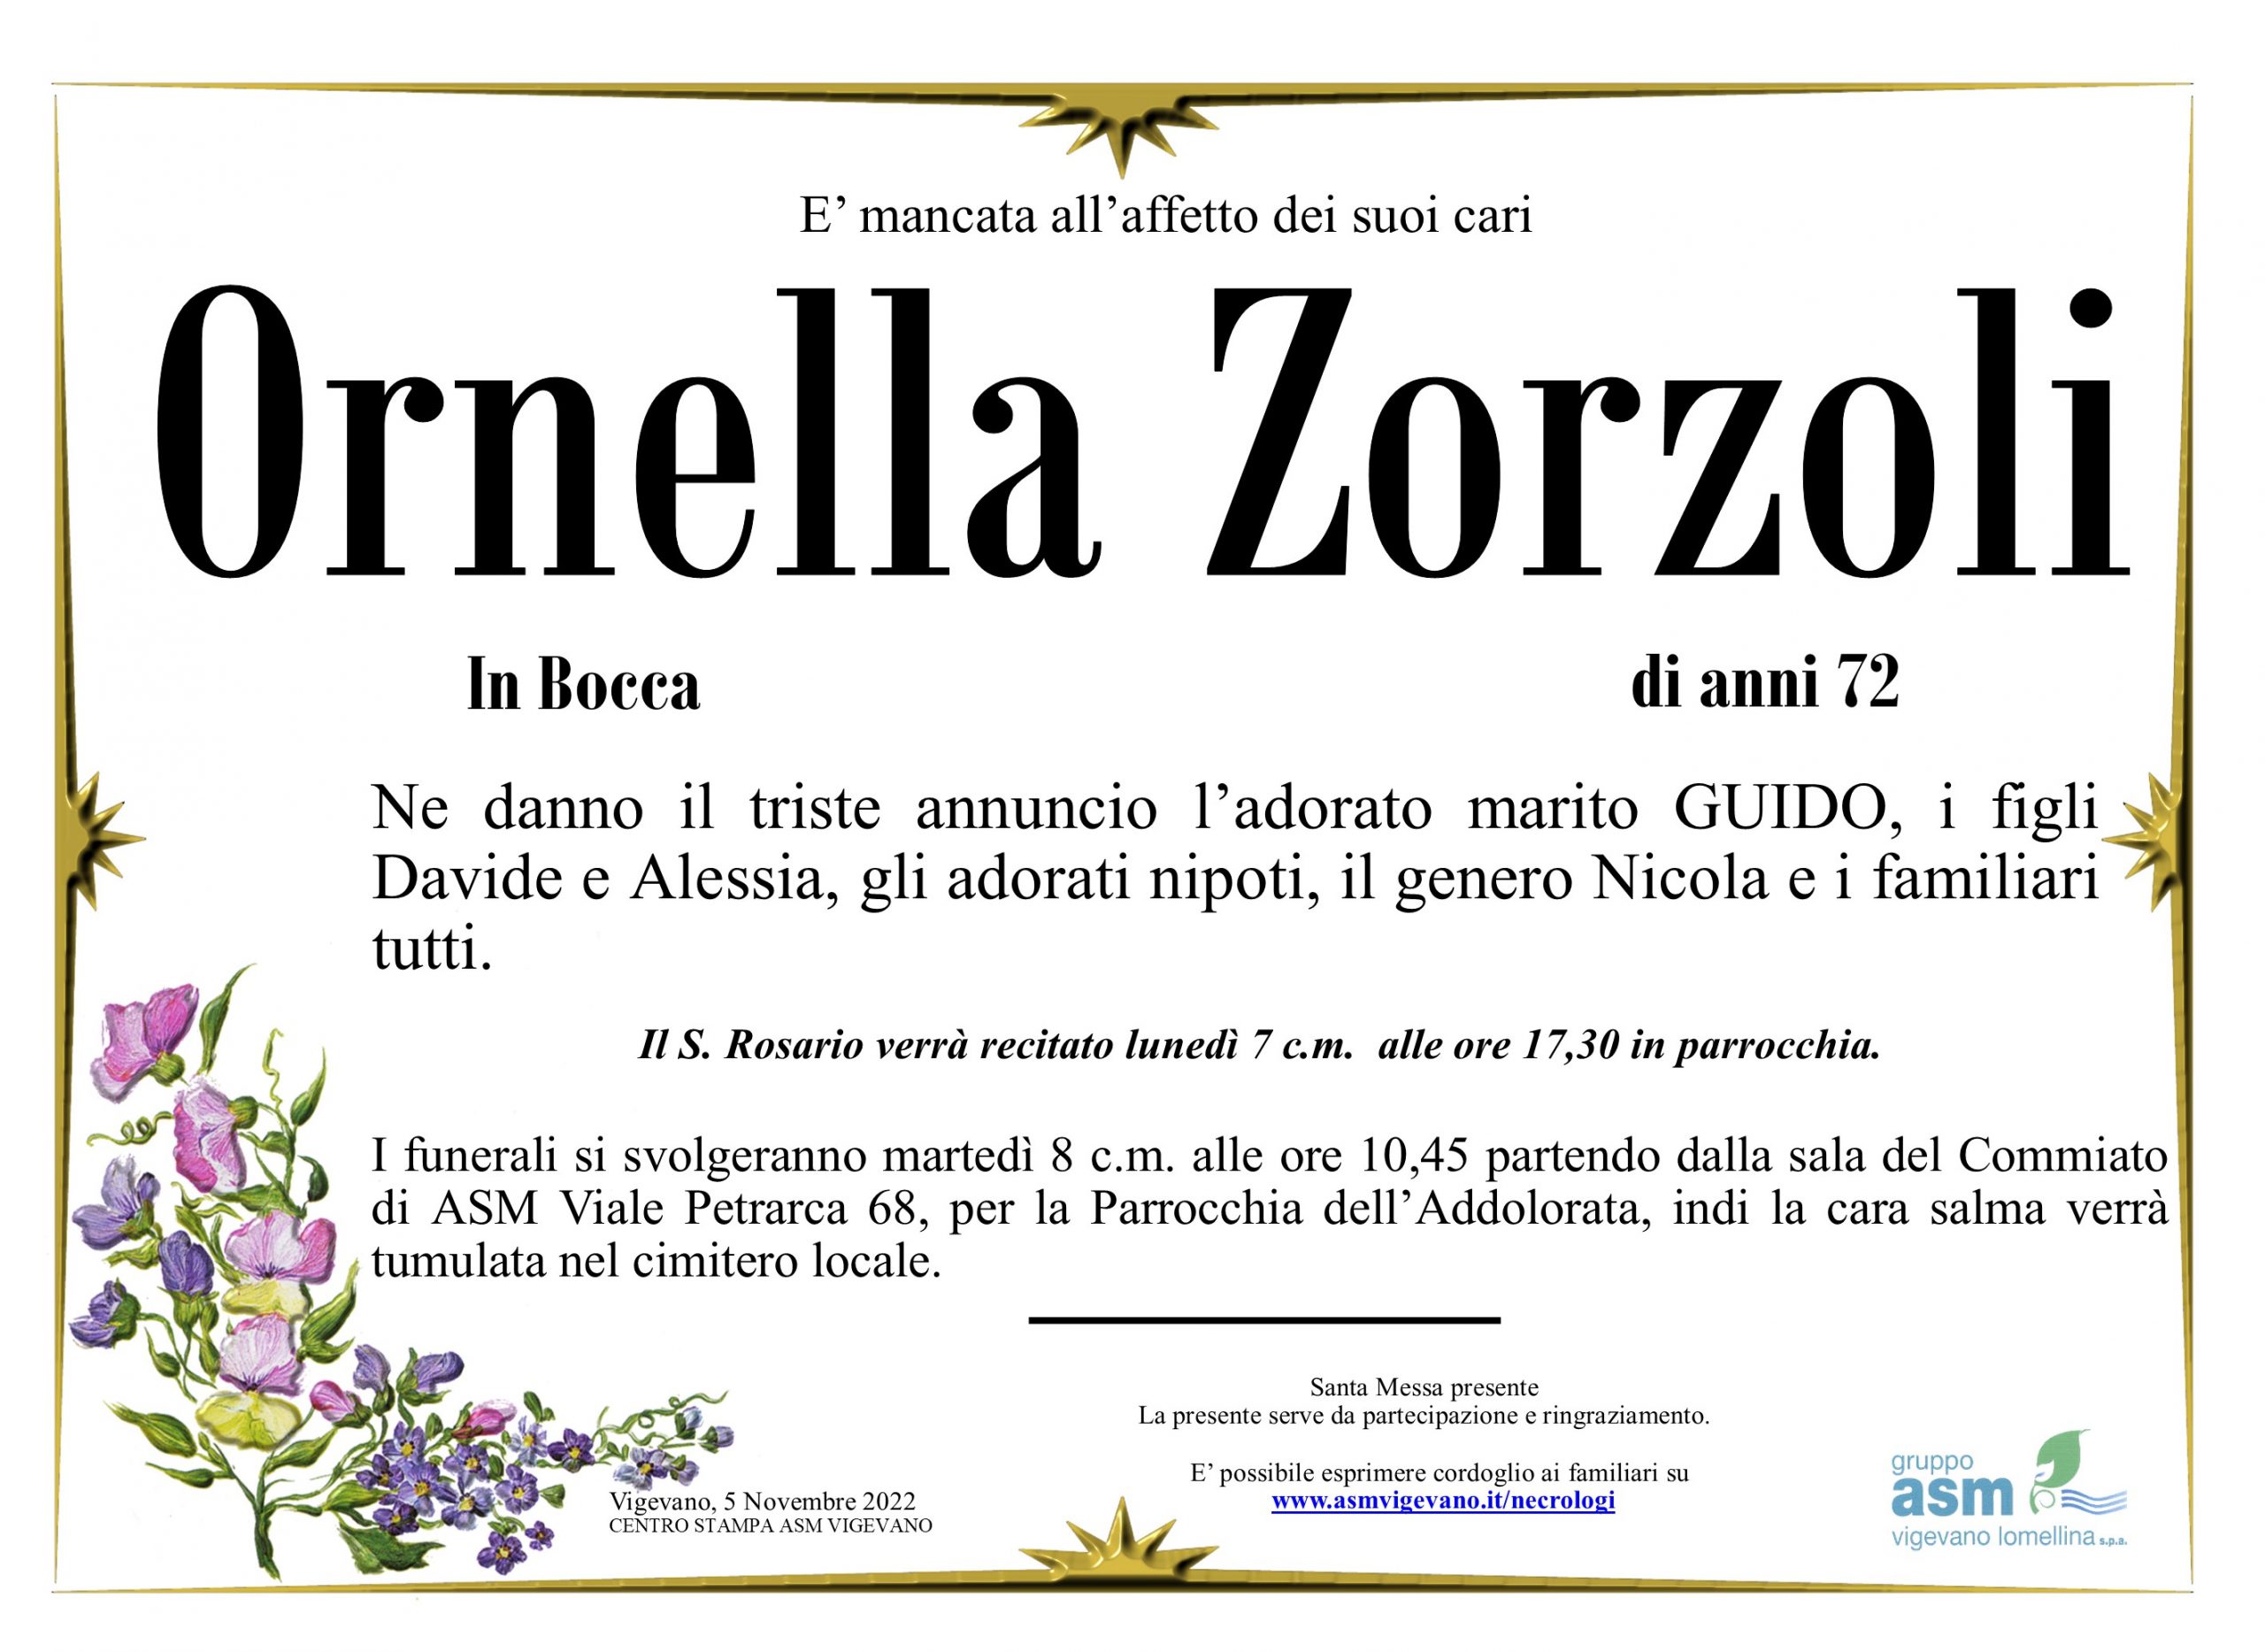 Ornella Zorzoli